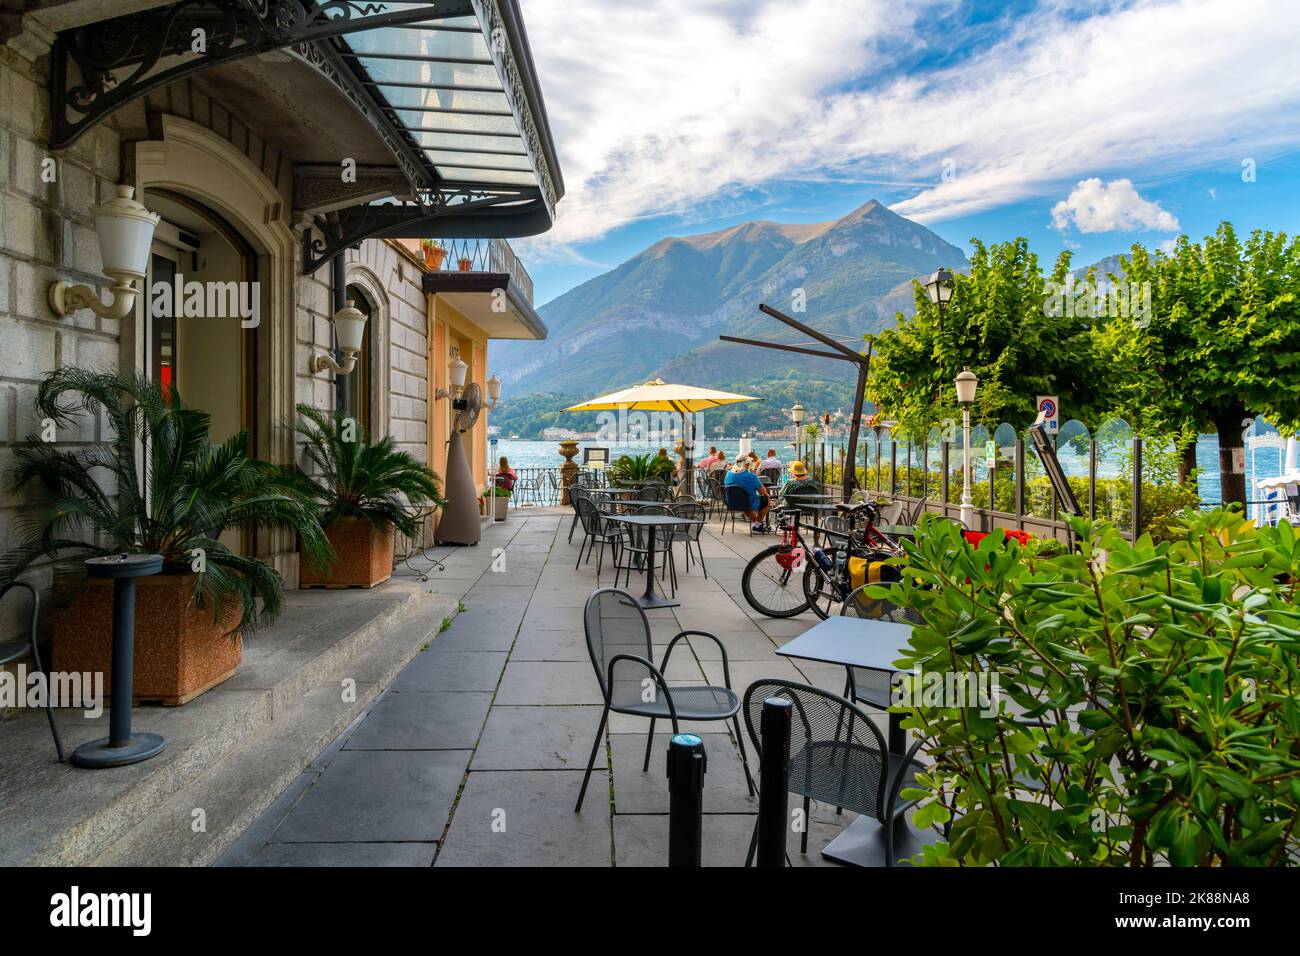 Les touristes dînent dans un café en plein air au bord du lac de Côme en été dans la ville pittoresque de Bellagio, en Italie. Banque D'Images